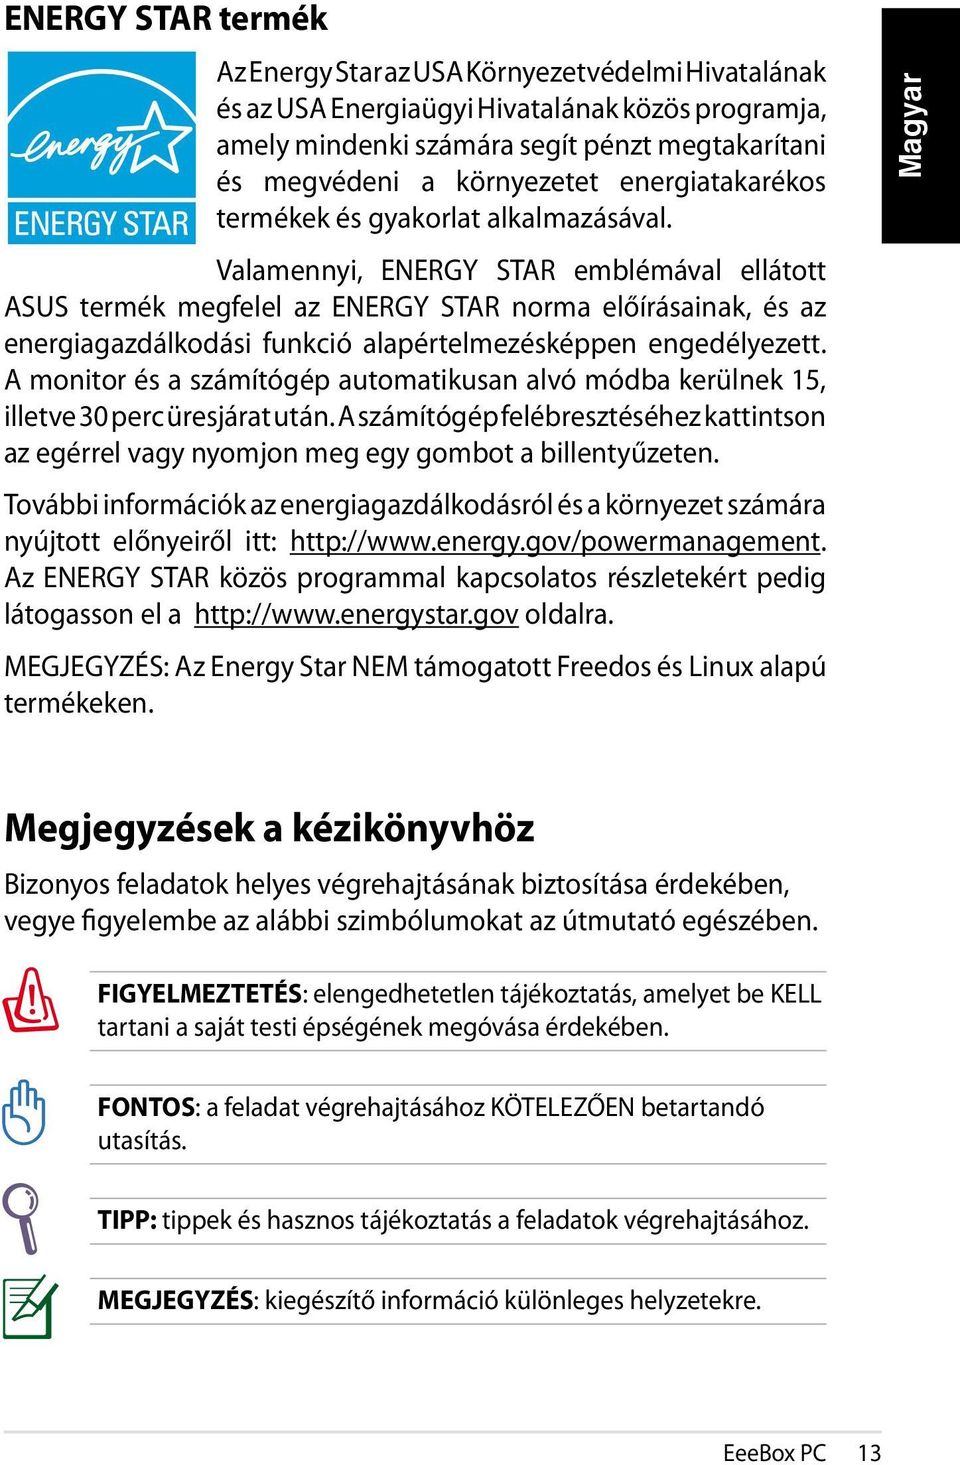 Valamennyi, ENERGY STAR emblémával ellátott ASUS termék megfelel az ENERGY STAR norma előírásainak, és az energiagazdálkodási funkció alapértelmezésképpen engedélyezett.